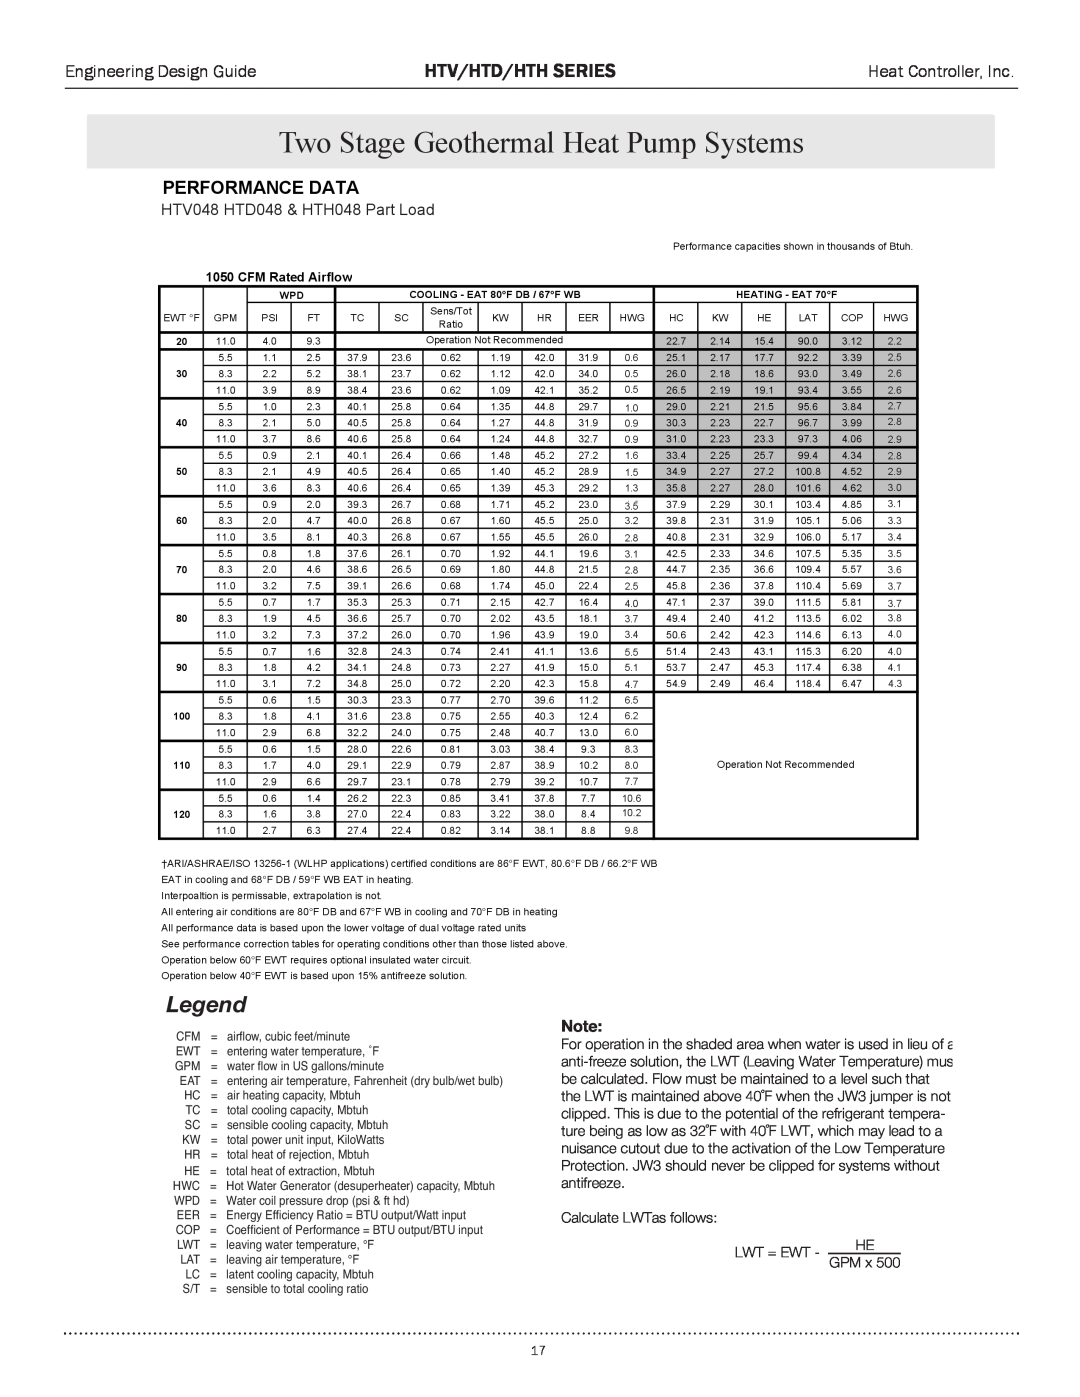 Heat Controller HTD SERIES manual HTV048/6änÊ* ÀÌÊ& HTD048œPart `Load, Egend, Htv/Htd/Hth Series, Performance Data, œÌi 